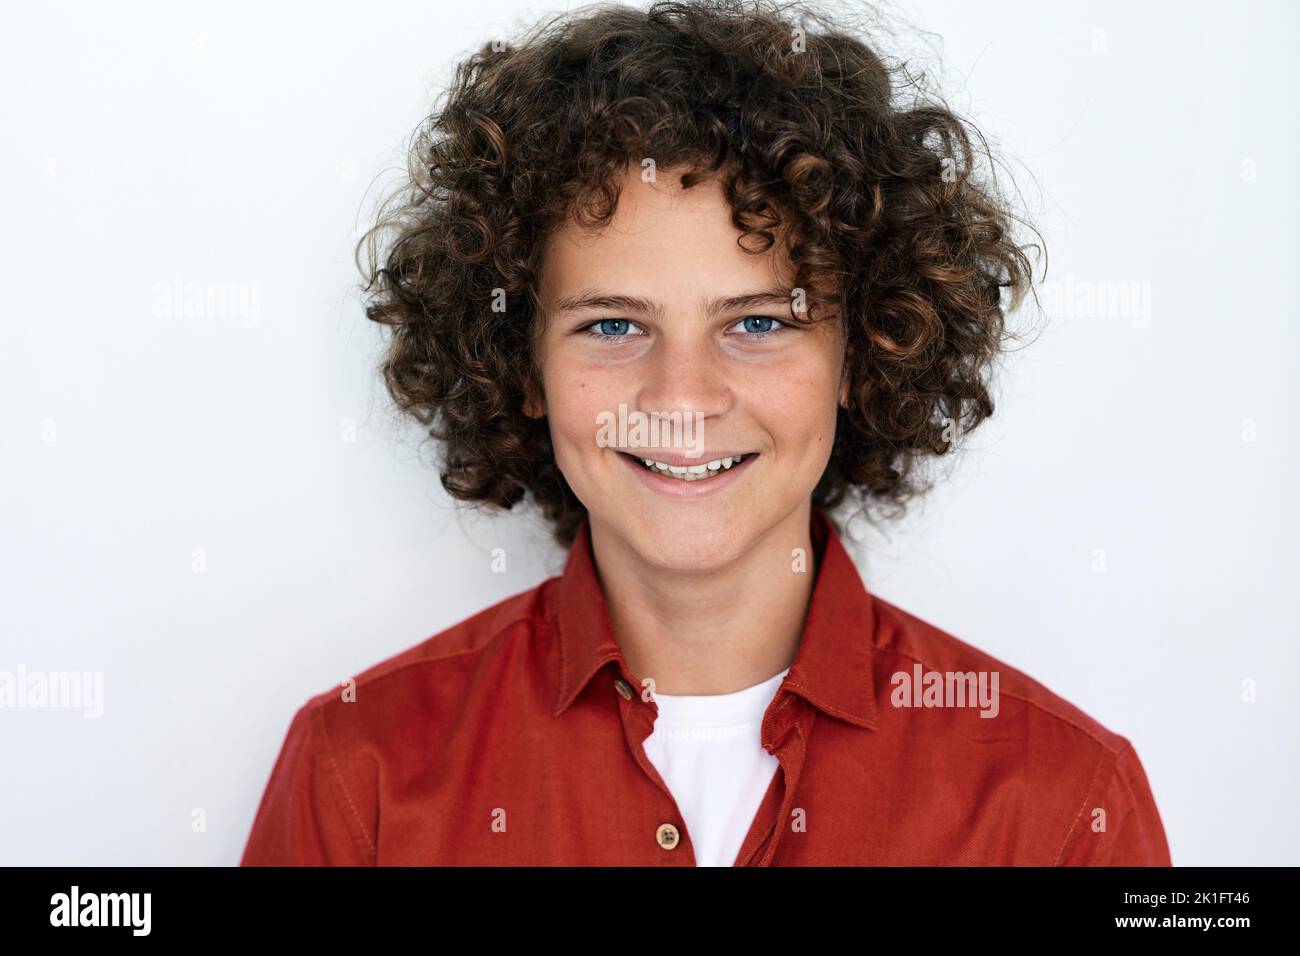 Portrait d'un beau garçon aux cheveux bouclés avec un sourire crasseux et des yeux bleus, isolé sur fond blanc Banque D'Images